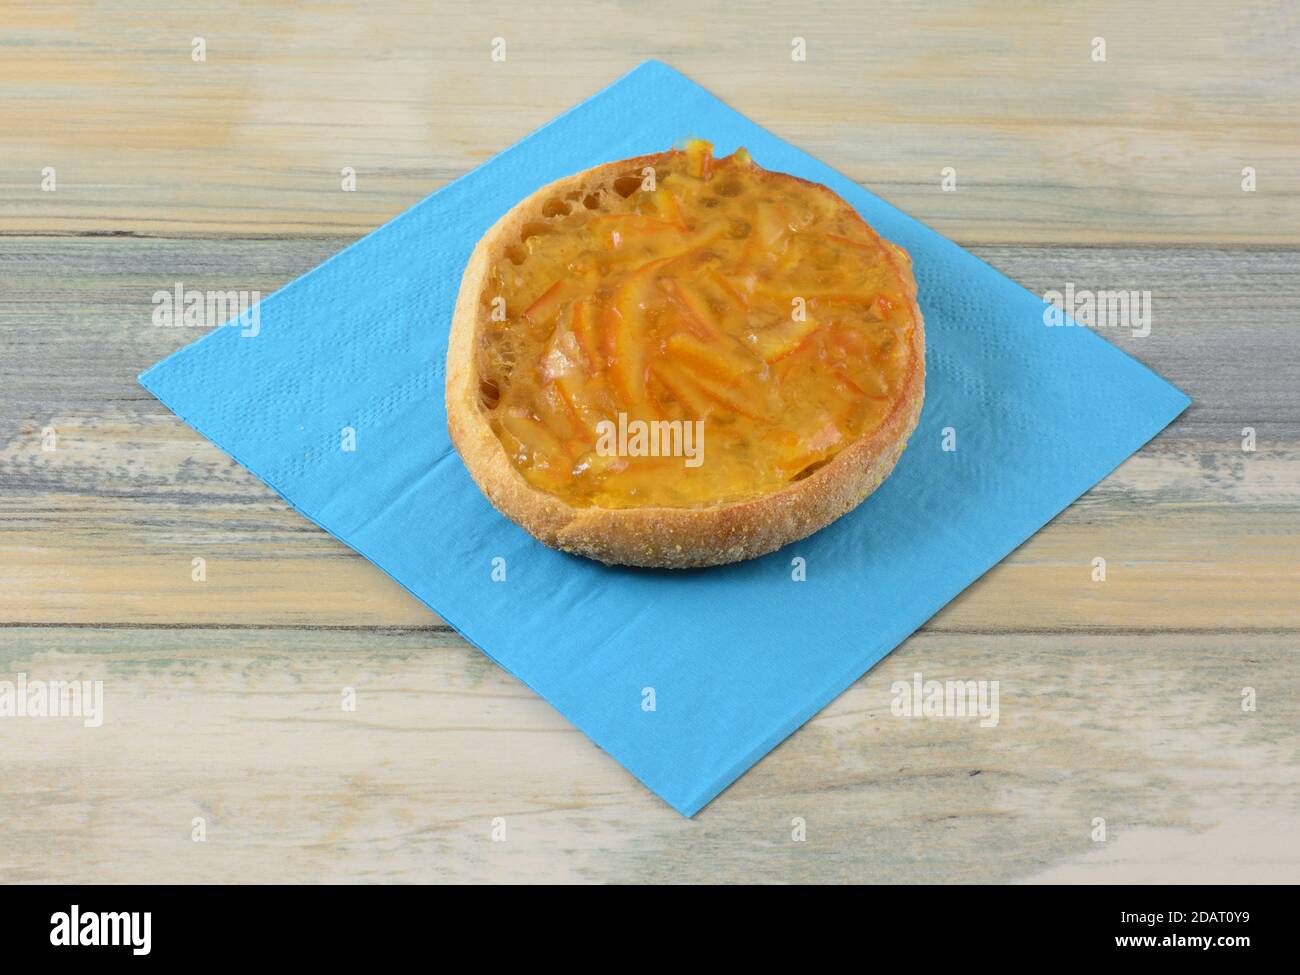 Orangenmarmelade auf Vollkorn Englische Muffin Hälfte auf blau Serviette auf dem Tisch Stockfoto